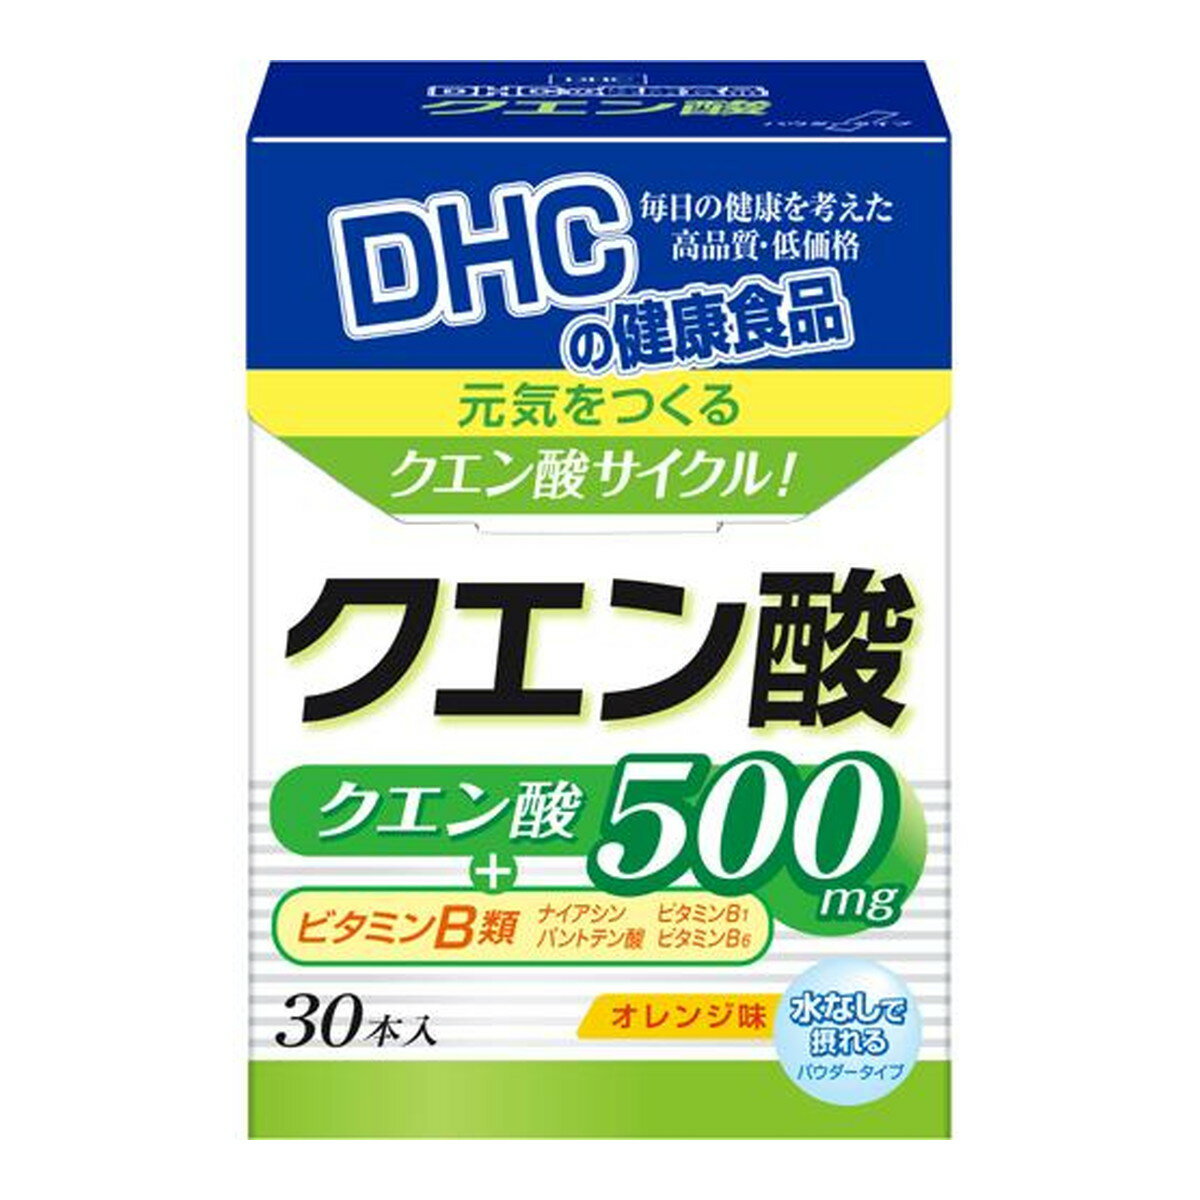 商品名：DHC クエン酸 30本入内容量：30本入JANコード：4511413614679発売元、製造元、輸入元又は販売元：DHC原産国：日本区分：その他健康食品商品番号：103-*005-4511413614679商品説明スポーツの後やス...